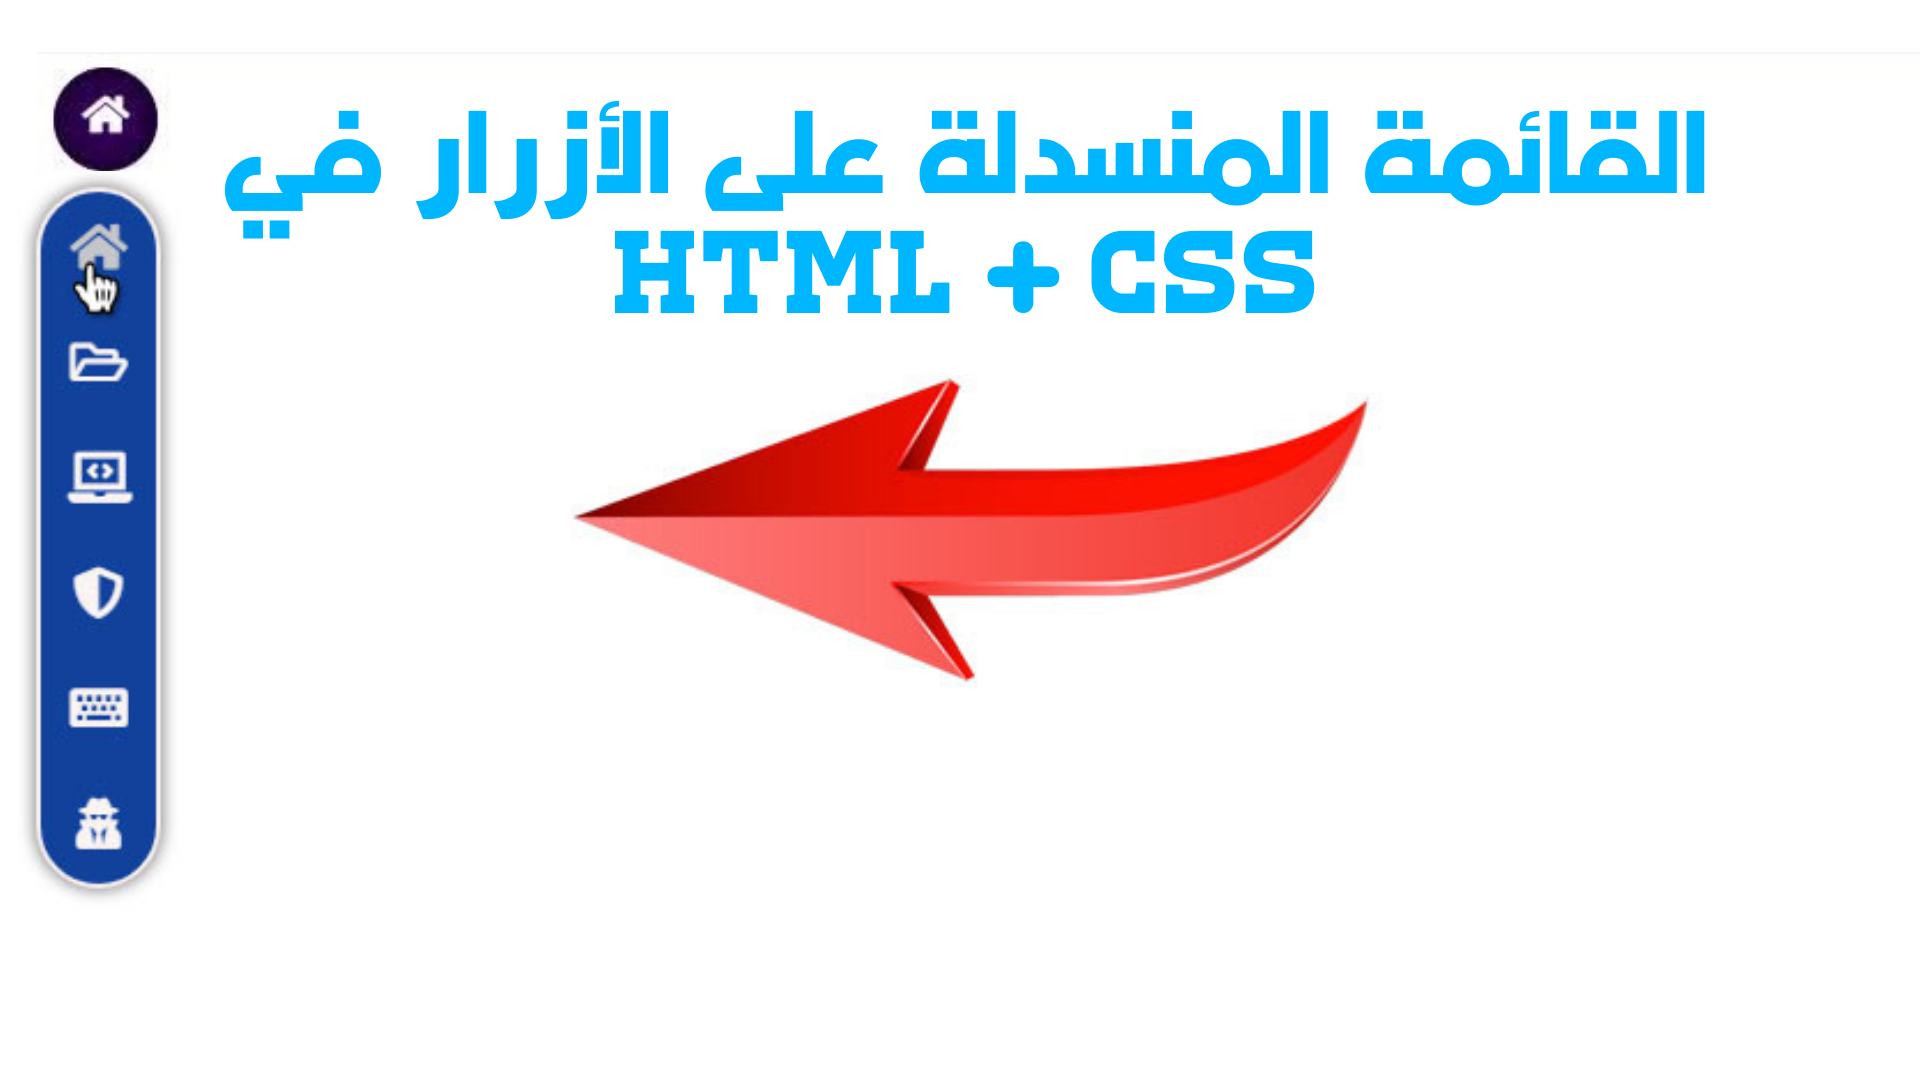 القائمة المنسدلة على الأزرار في HTML + CSS